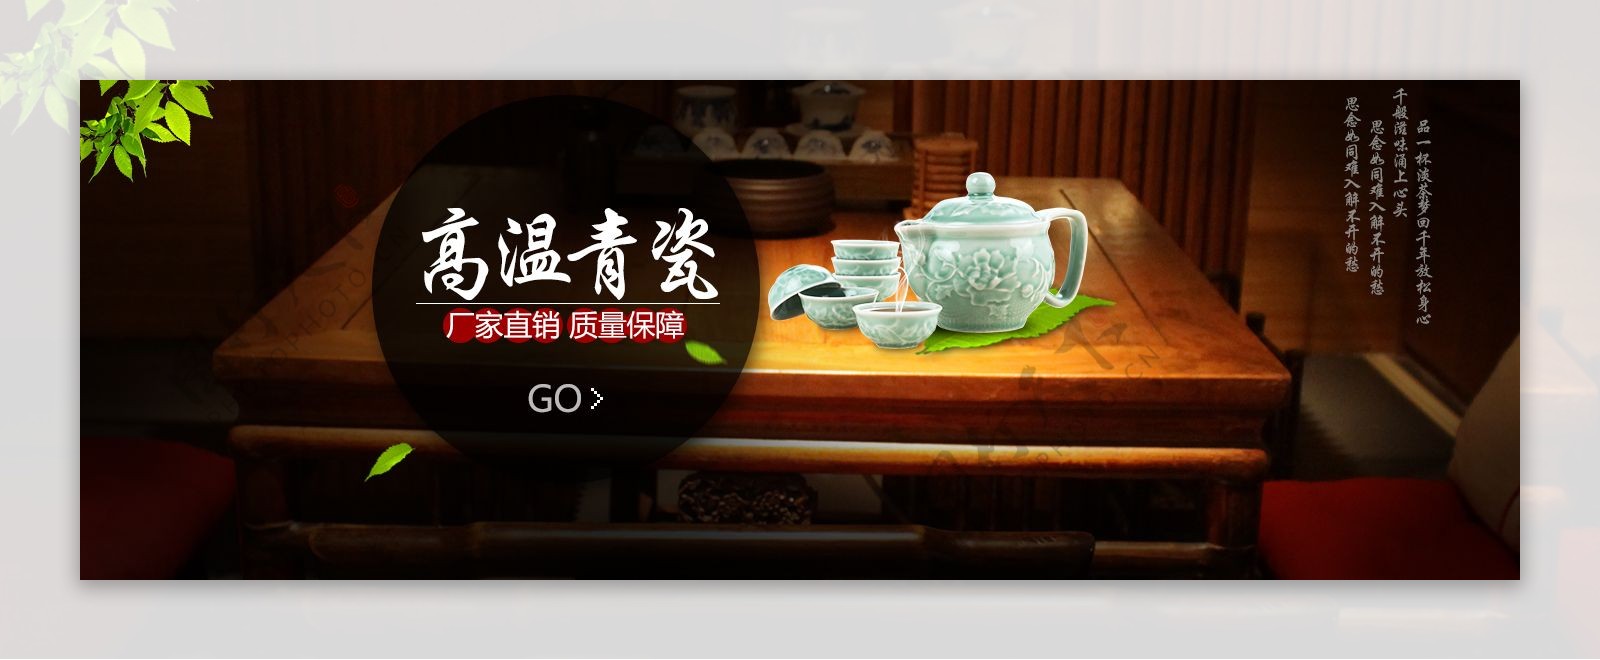 天猫青瓷茶壶促销活动